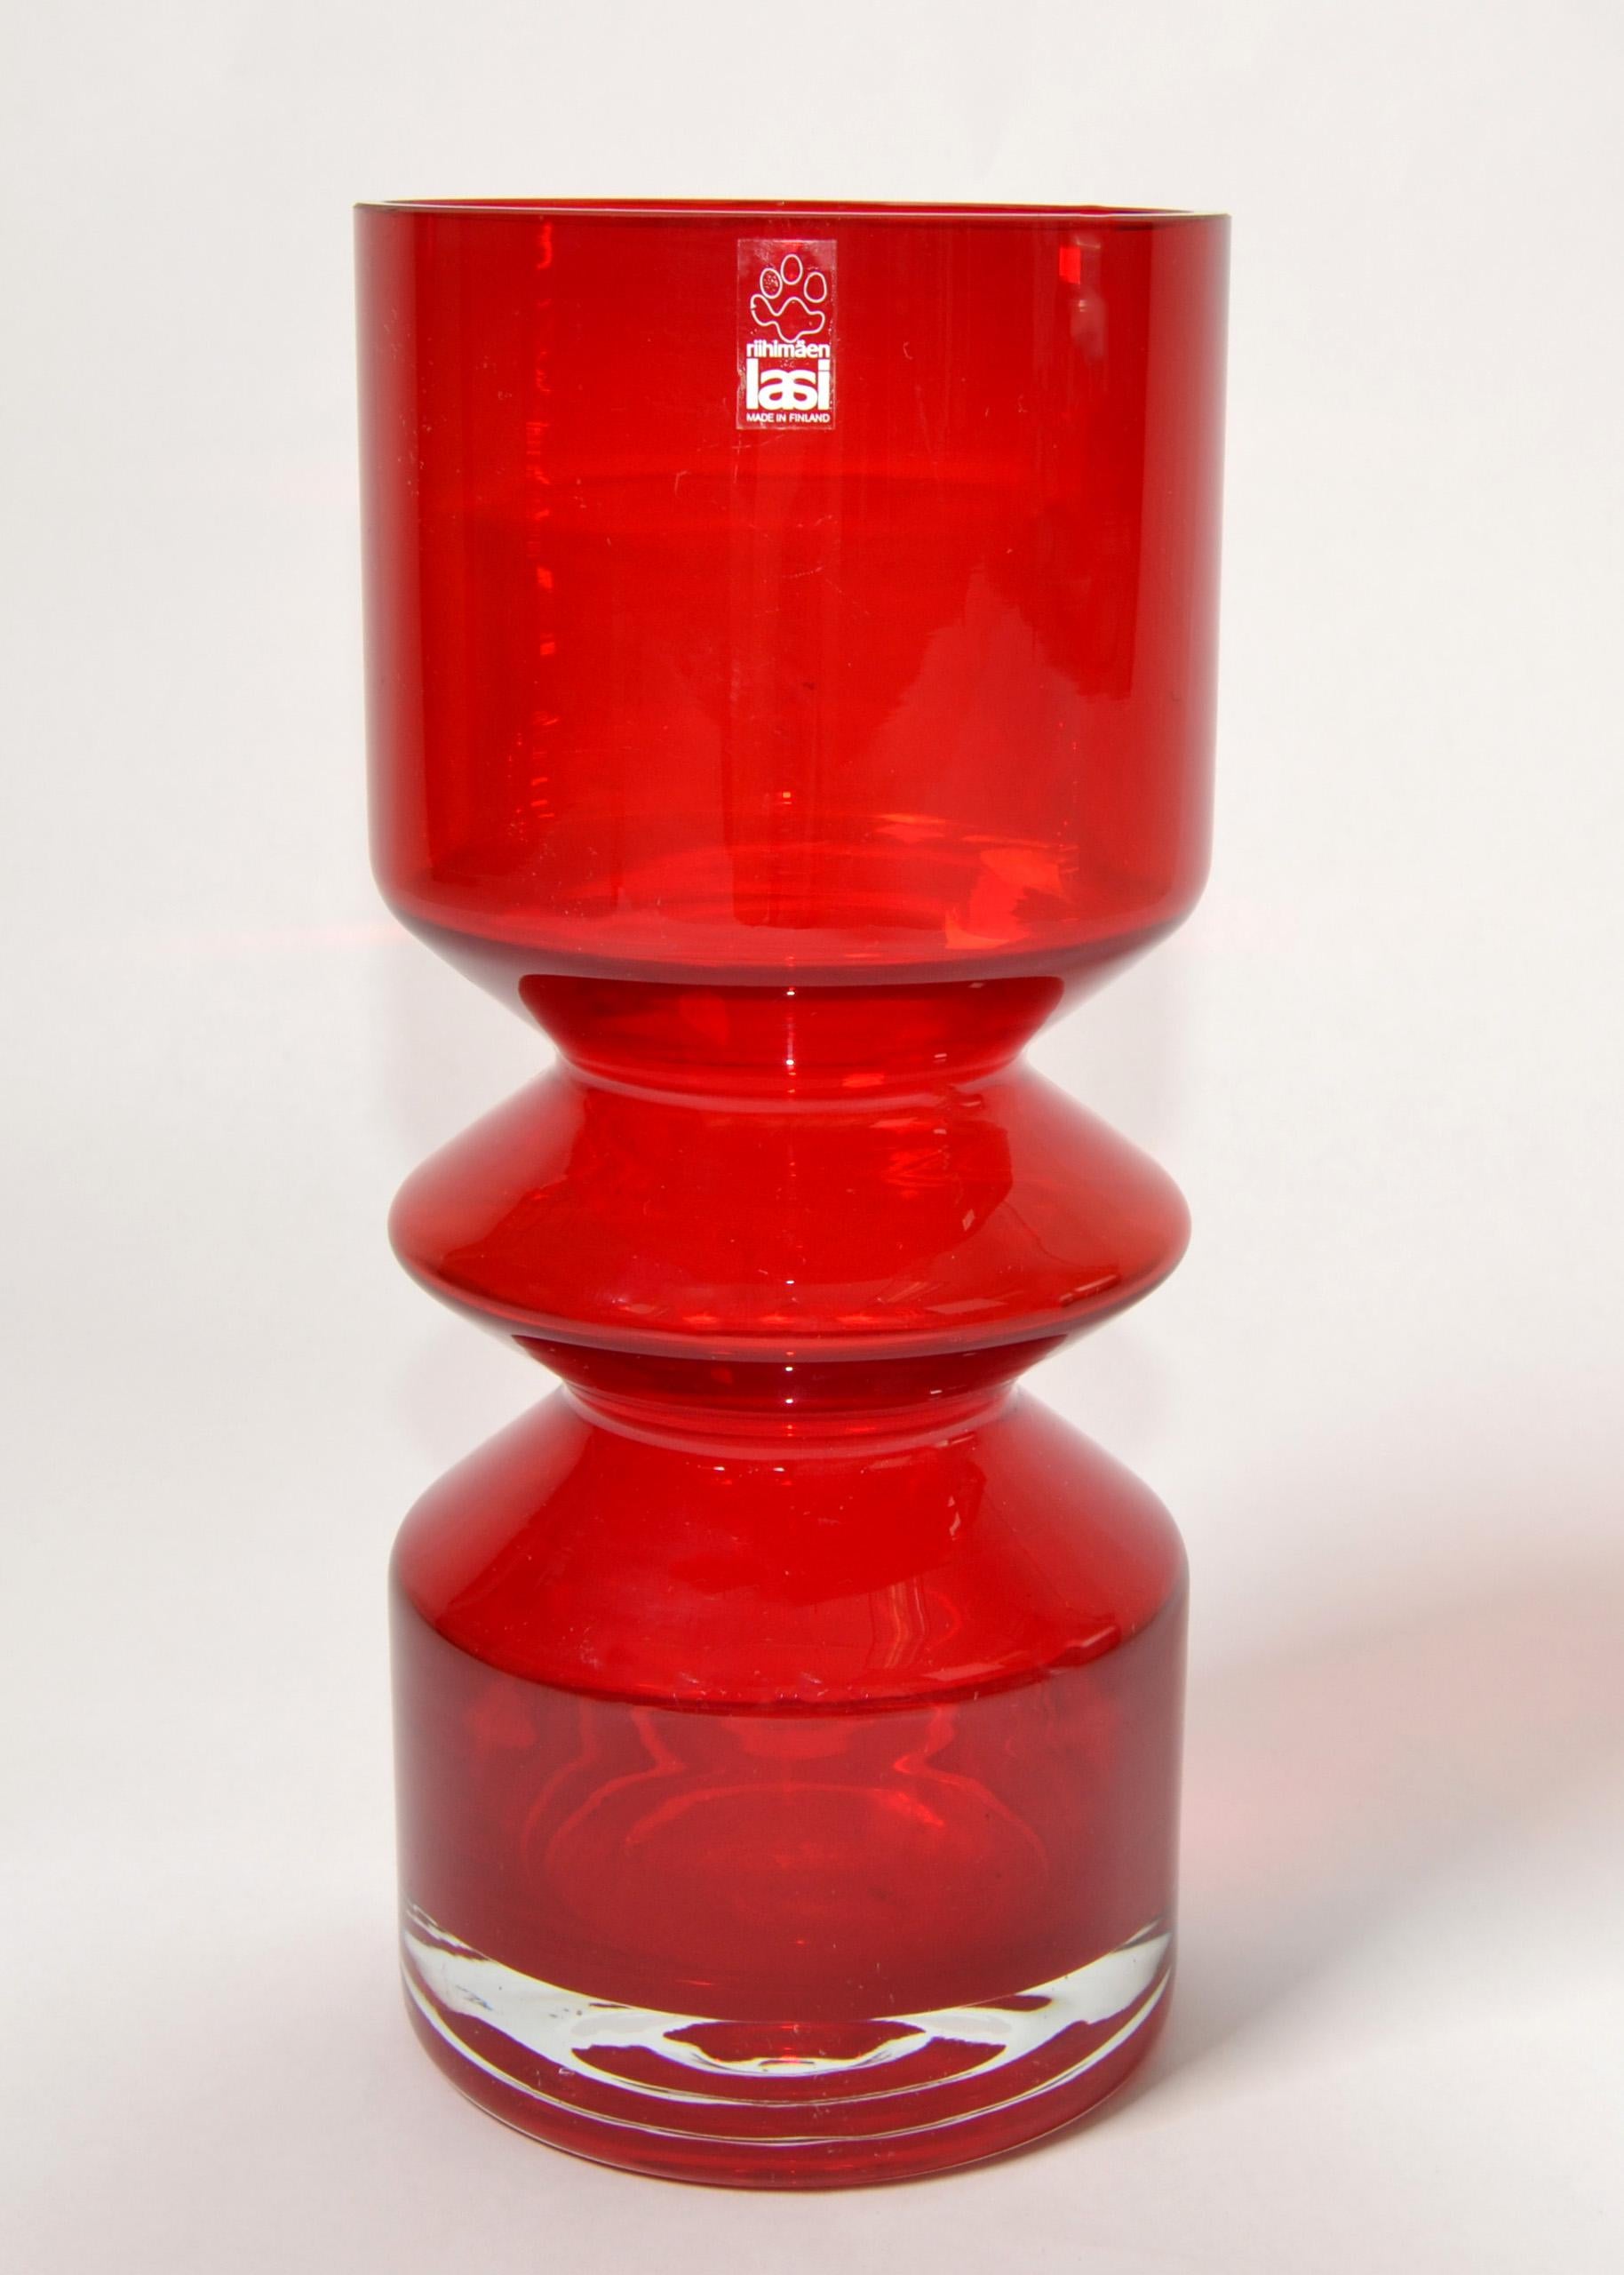 The Modern Scandinavian 1960s Tamara Aladin Rote geblasene Kunstglasvase für Riihimaen Lasi Oy Finnland.
In gutem Vintage-Zustand mit geringen Gebrauchsspuren.
Makers Mark Foil Label auf der Oberseite der Vase.
Eine dekorative Vase für den festlich